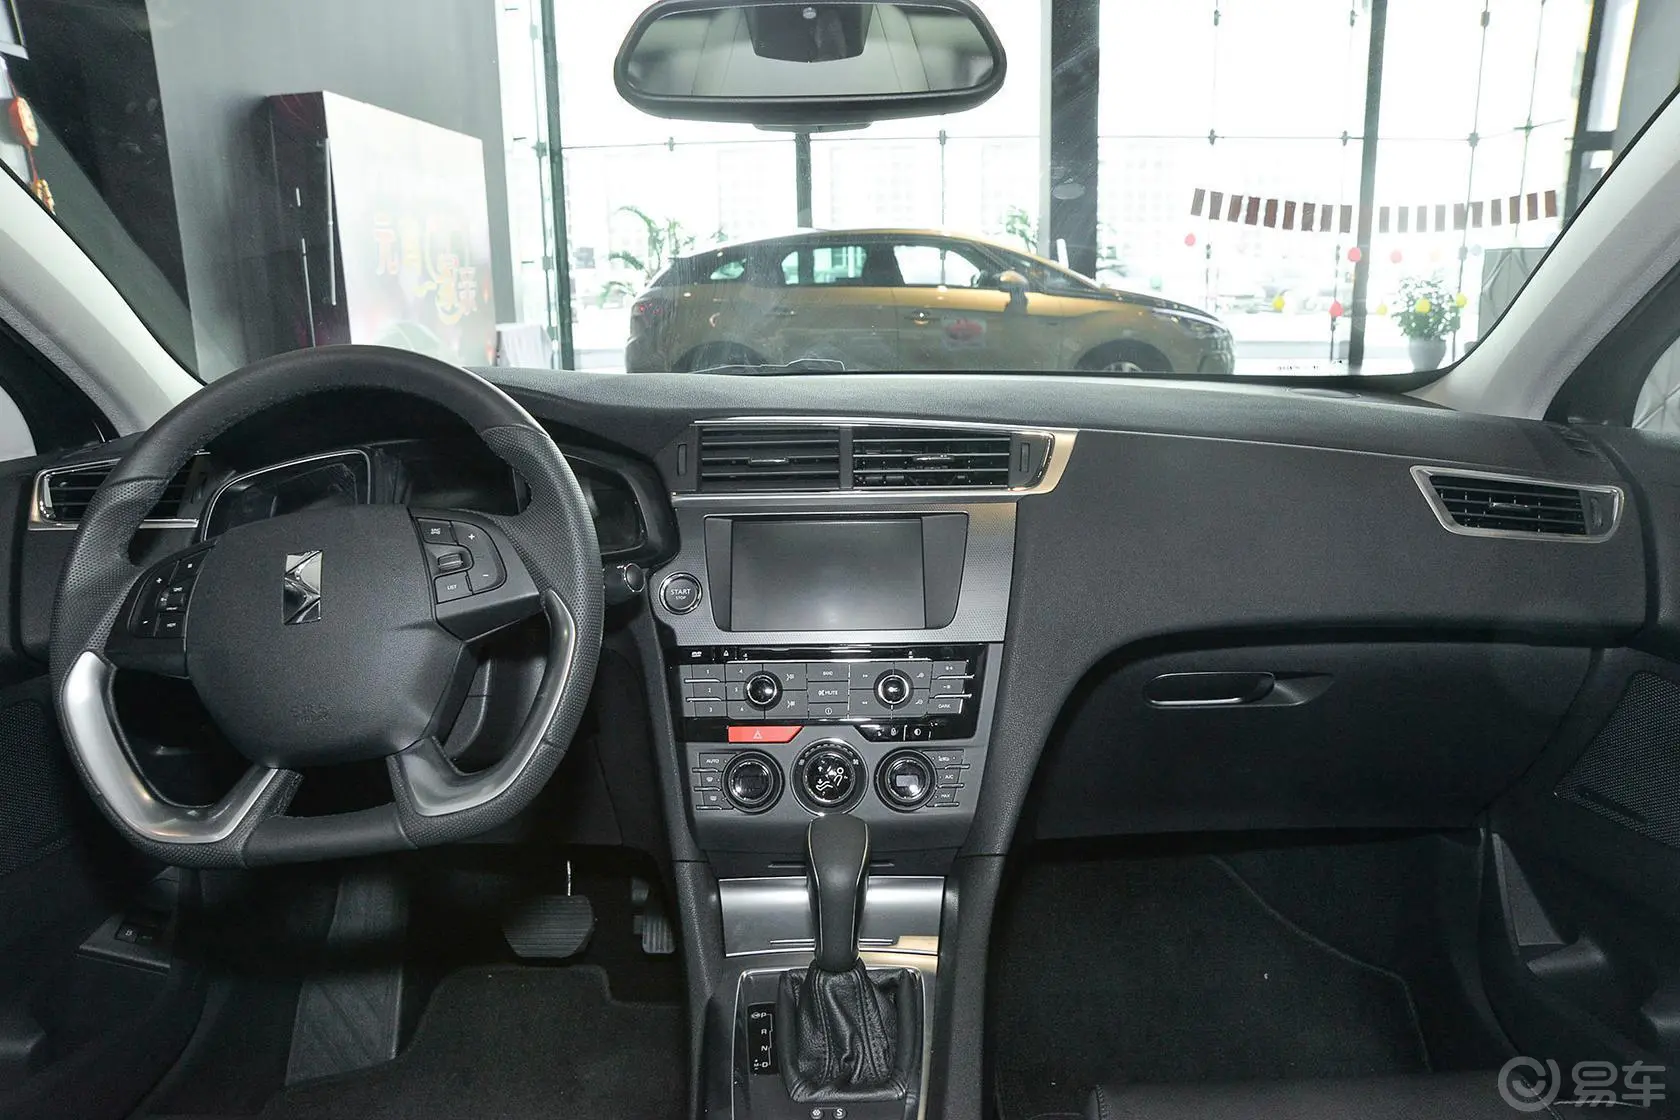 DS 61.6T 豪华版THP160前排车顶中央控制区